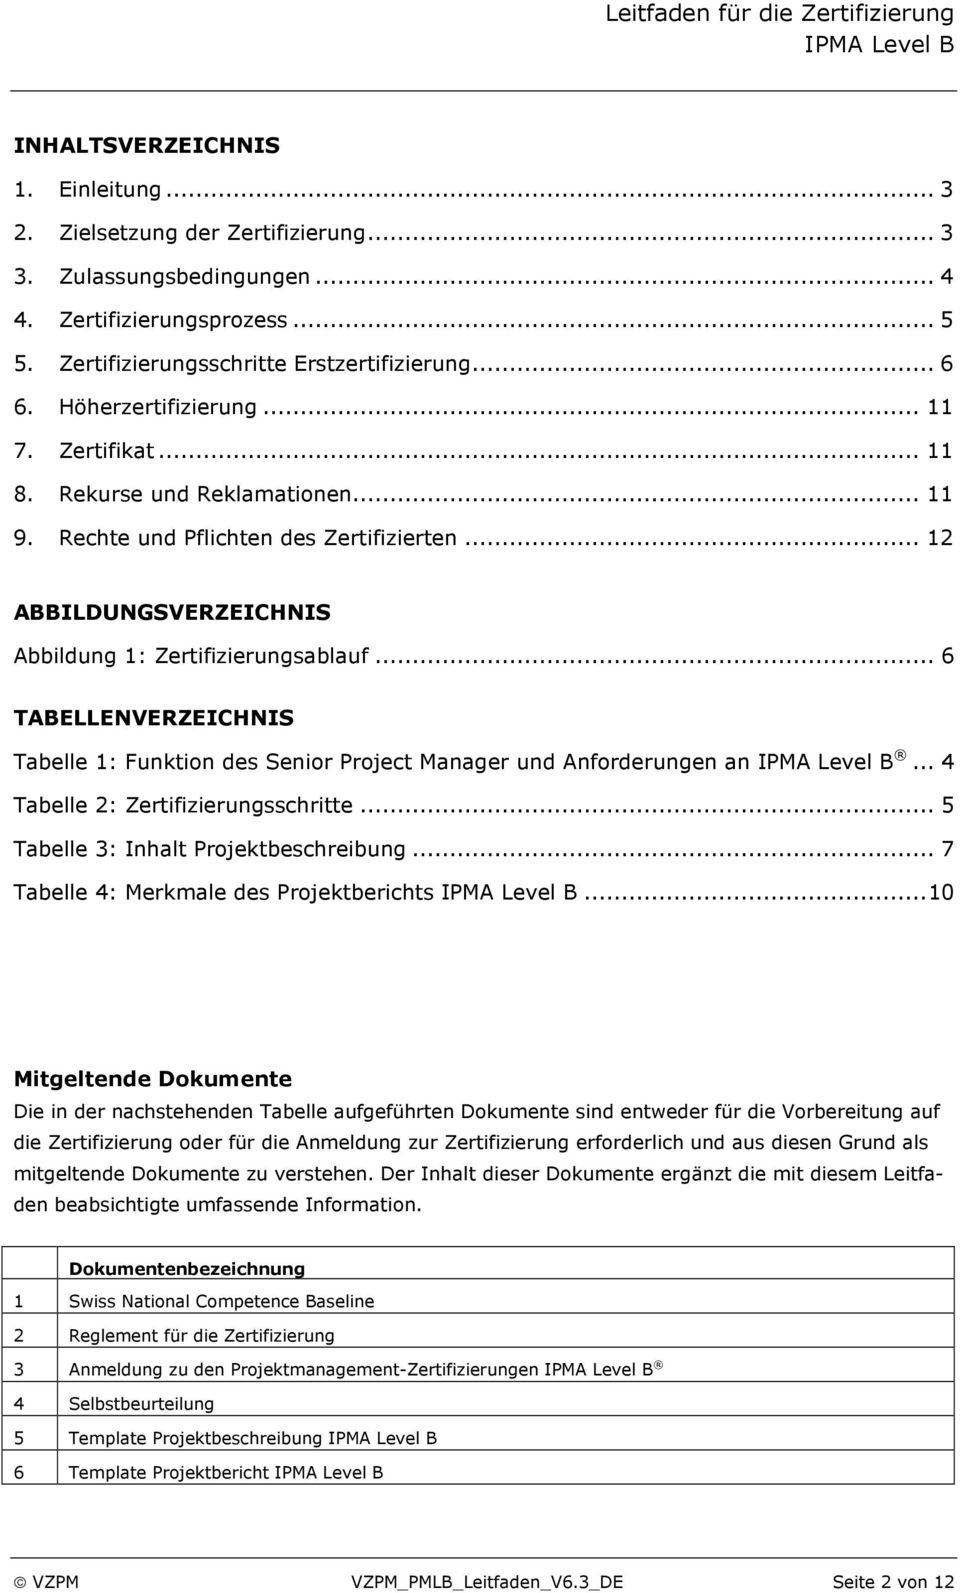 .. 6 TABELLENVERZEICHNIS Tabelle 1: Funktion des Senior Project Manager und Anforderungen an... 4 Tabelle 2: Zertifizierungsschritte... 5 Tabelle 3: Inhalt Projektbeschreibung.